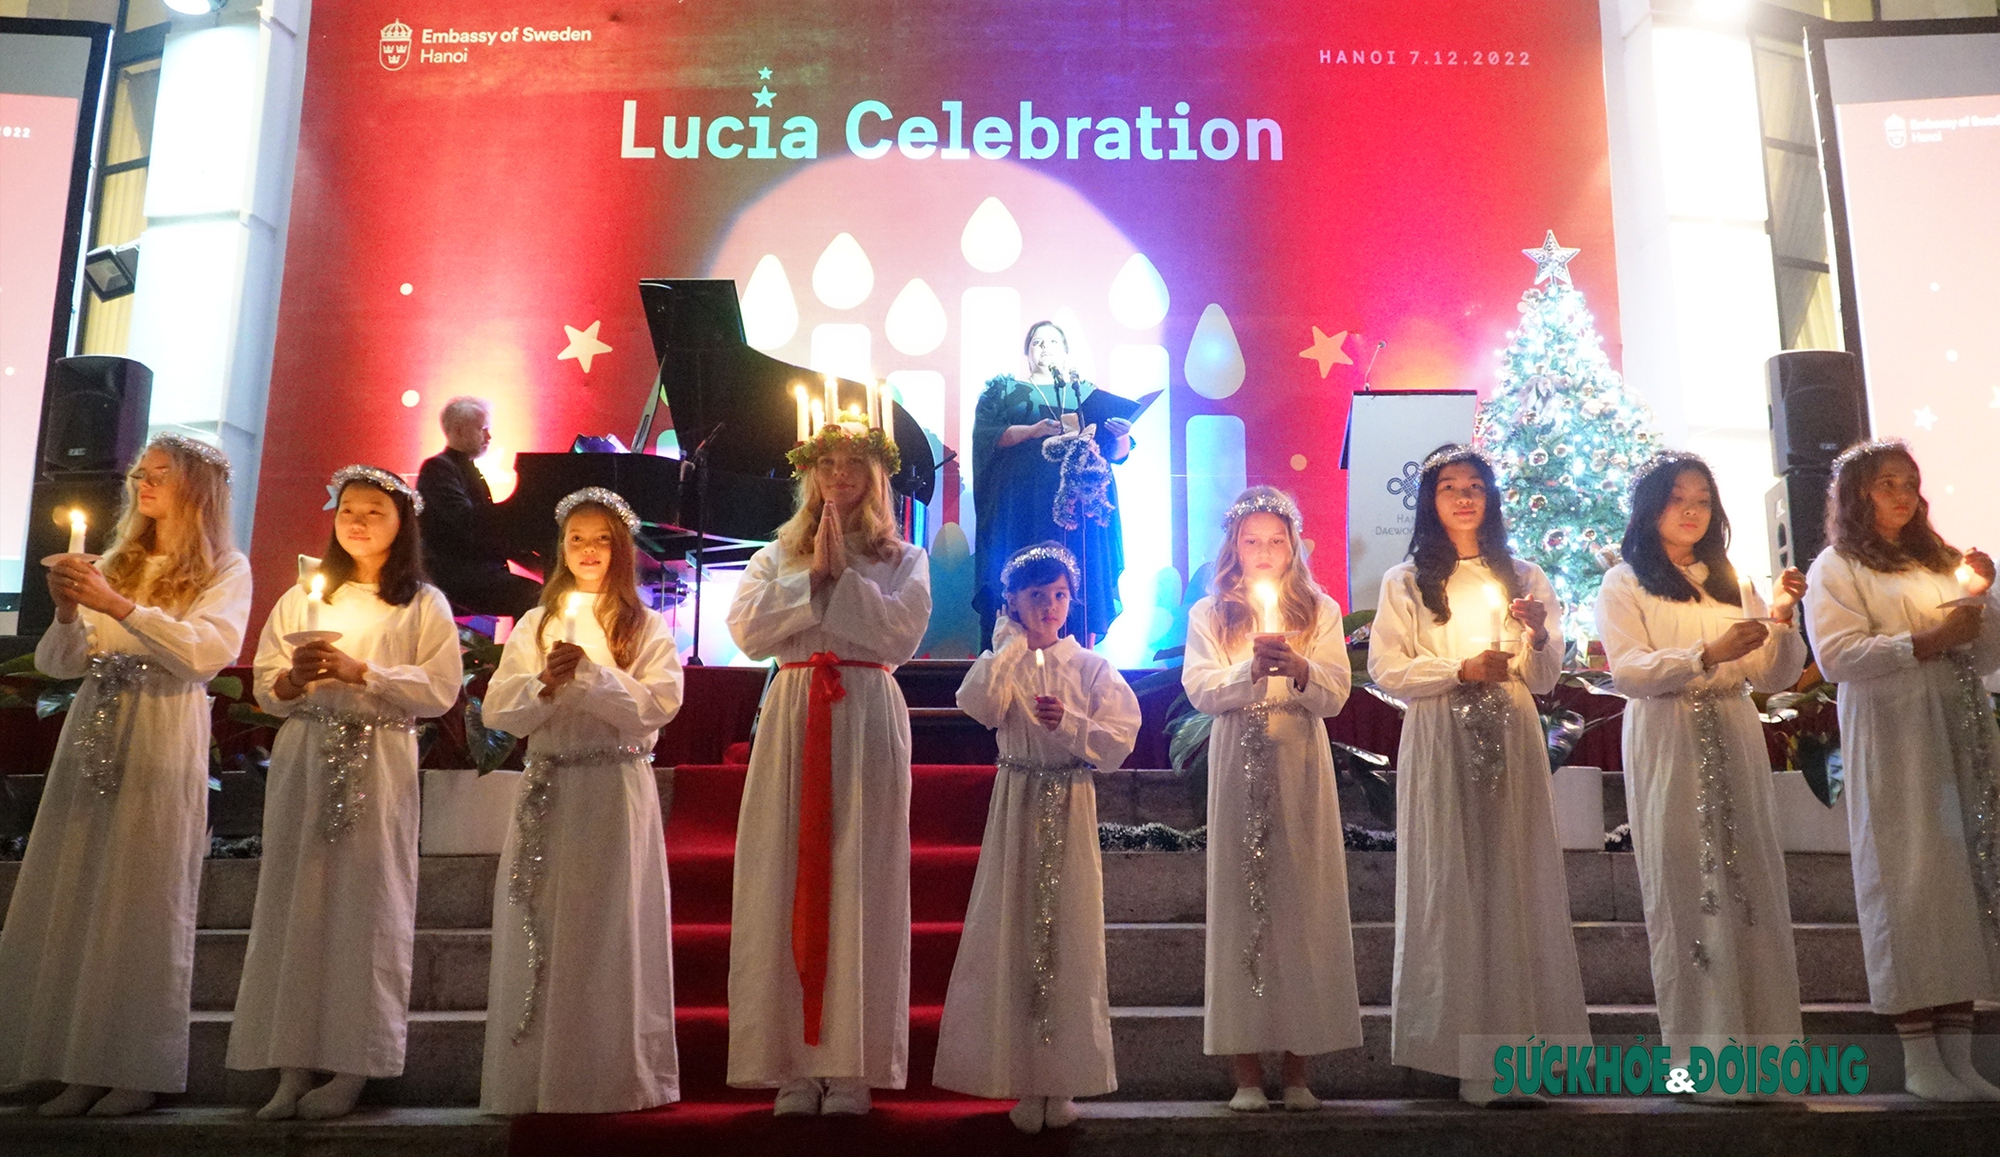 Đặc sắc lễ hội Lucia của Thụy Điển giữa lòng Thủ đô - Ảnh 2.